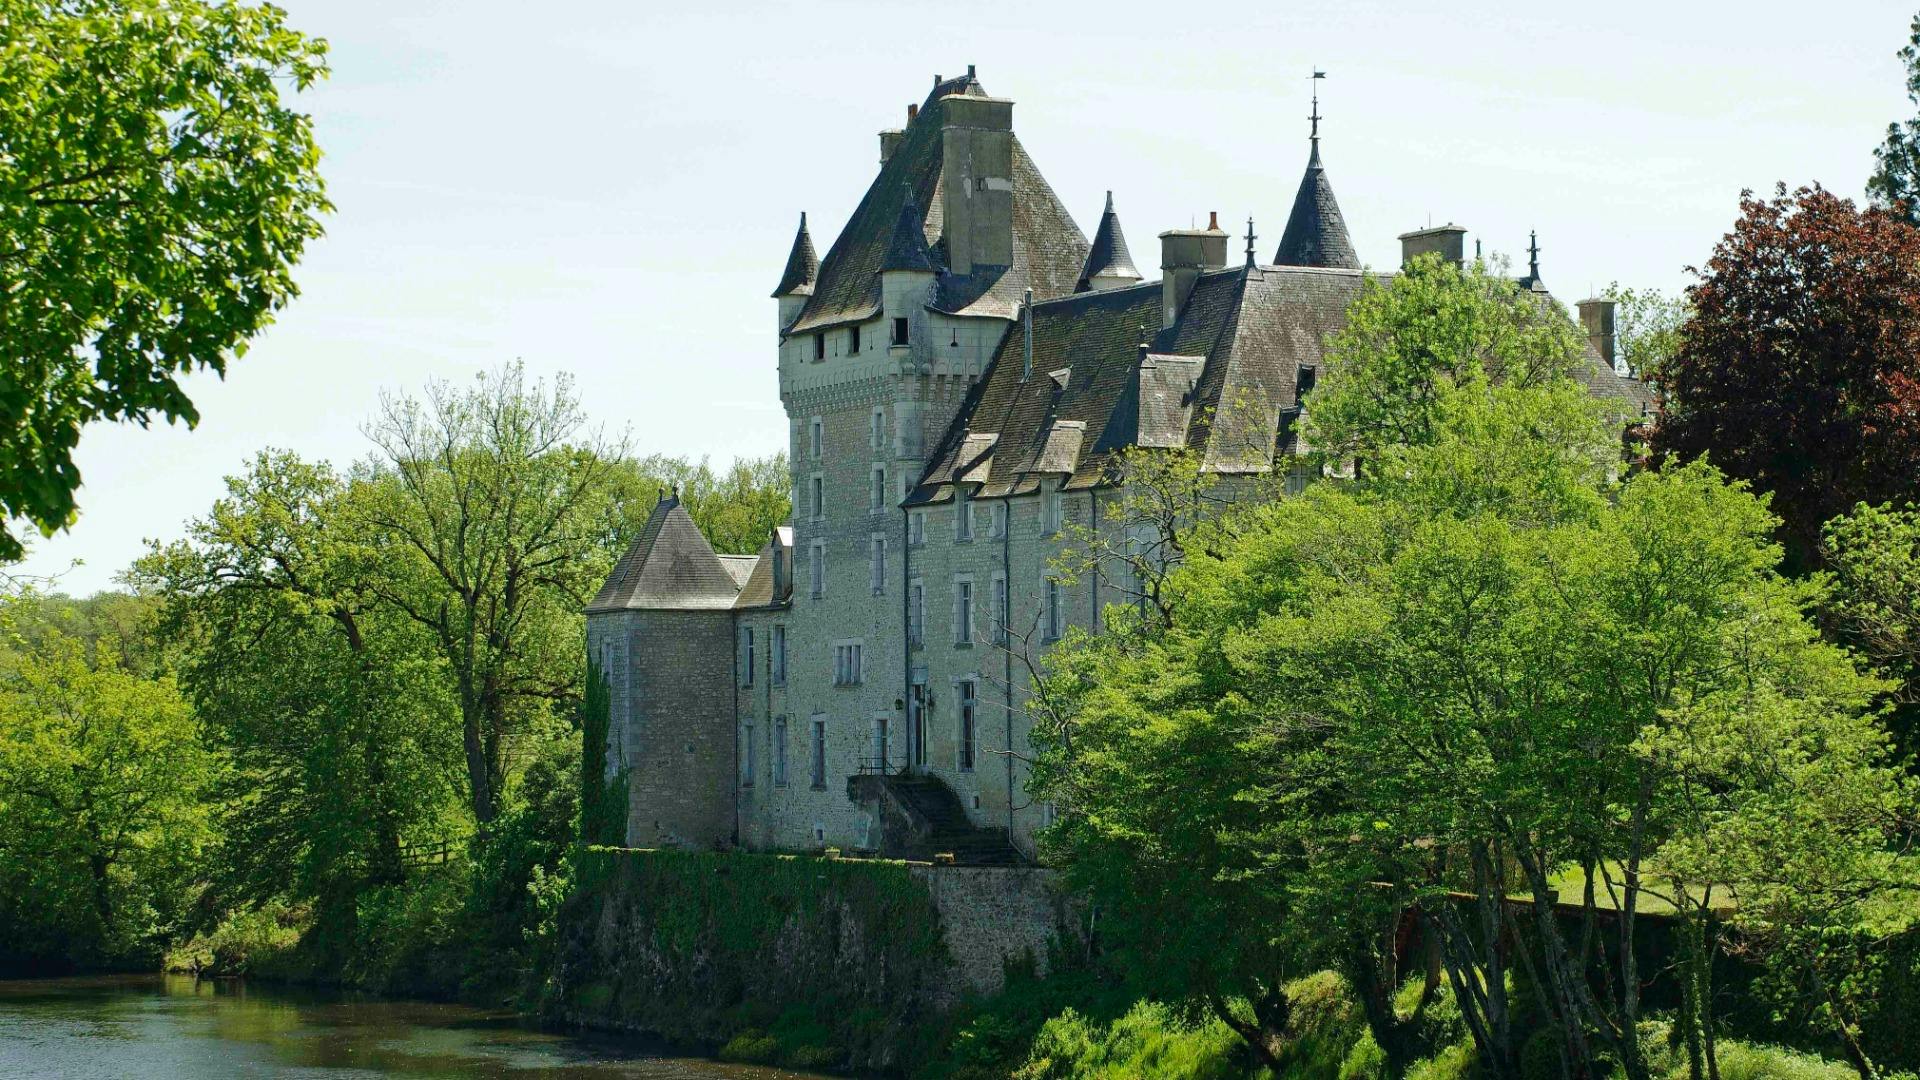 Château de La Tour